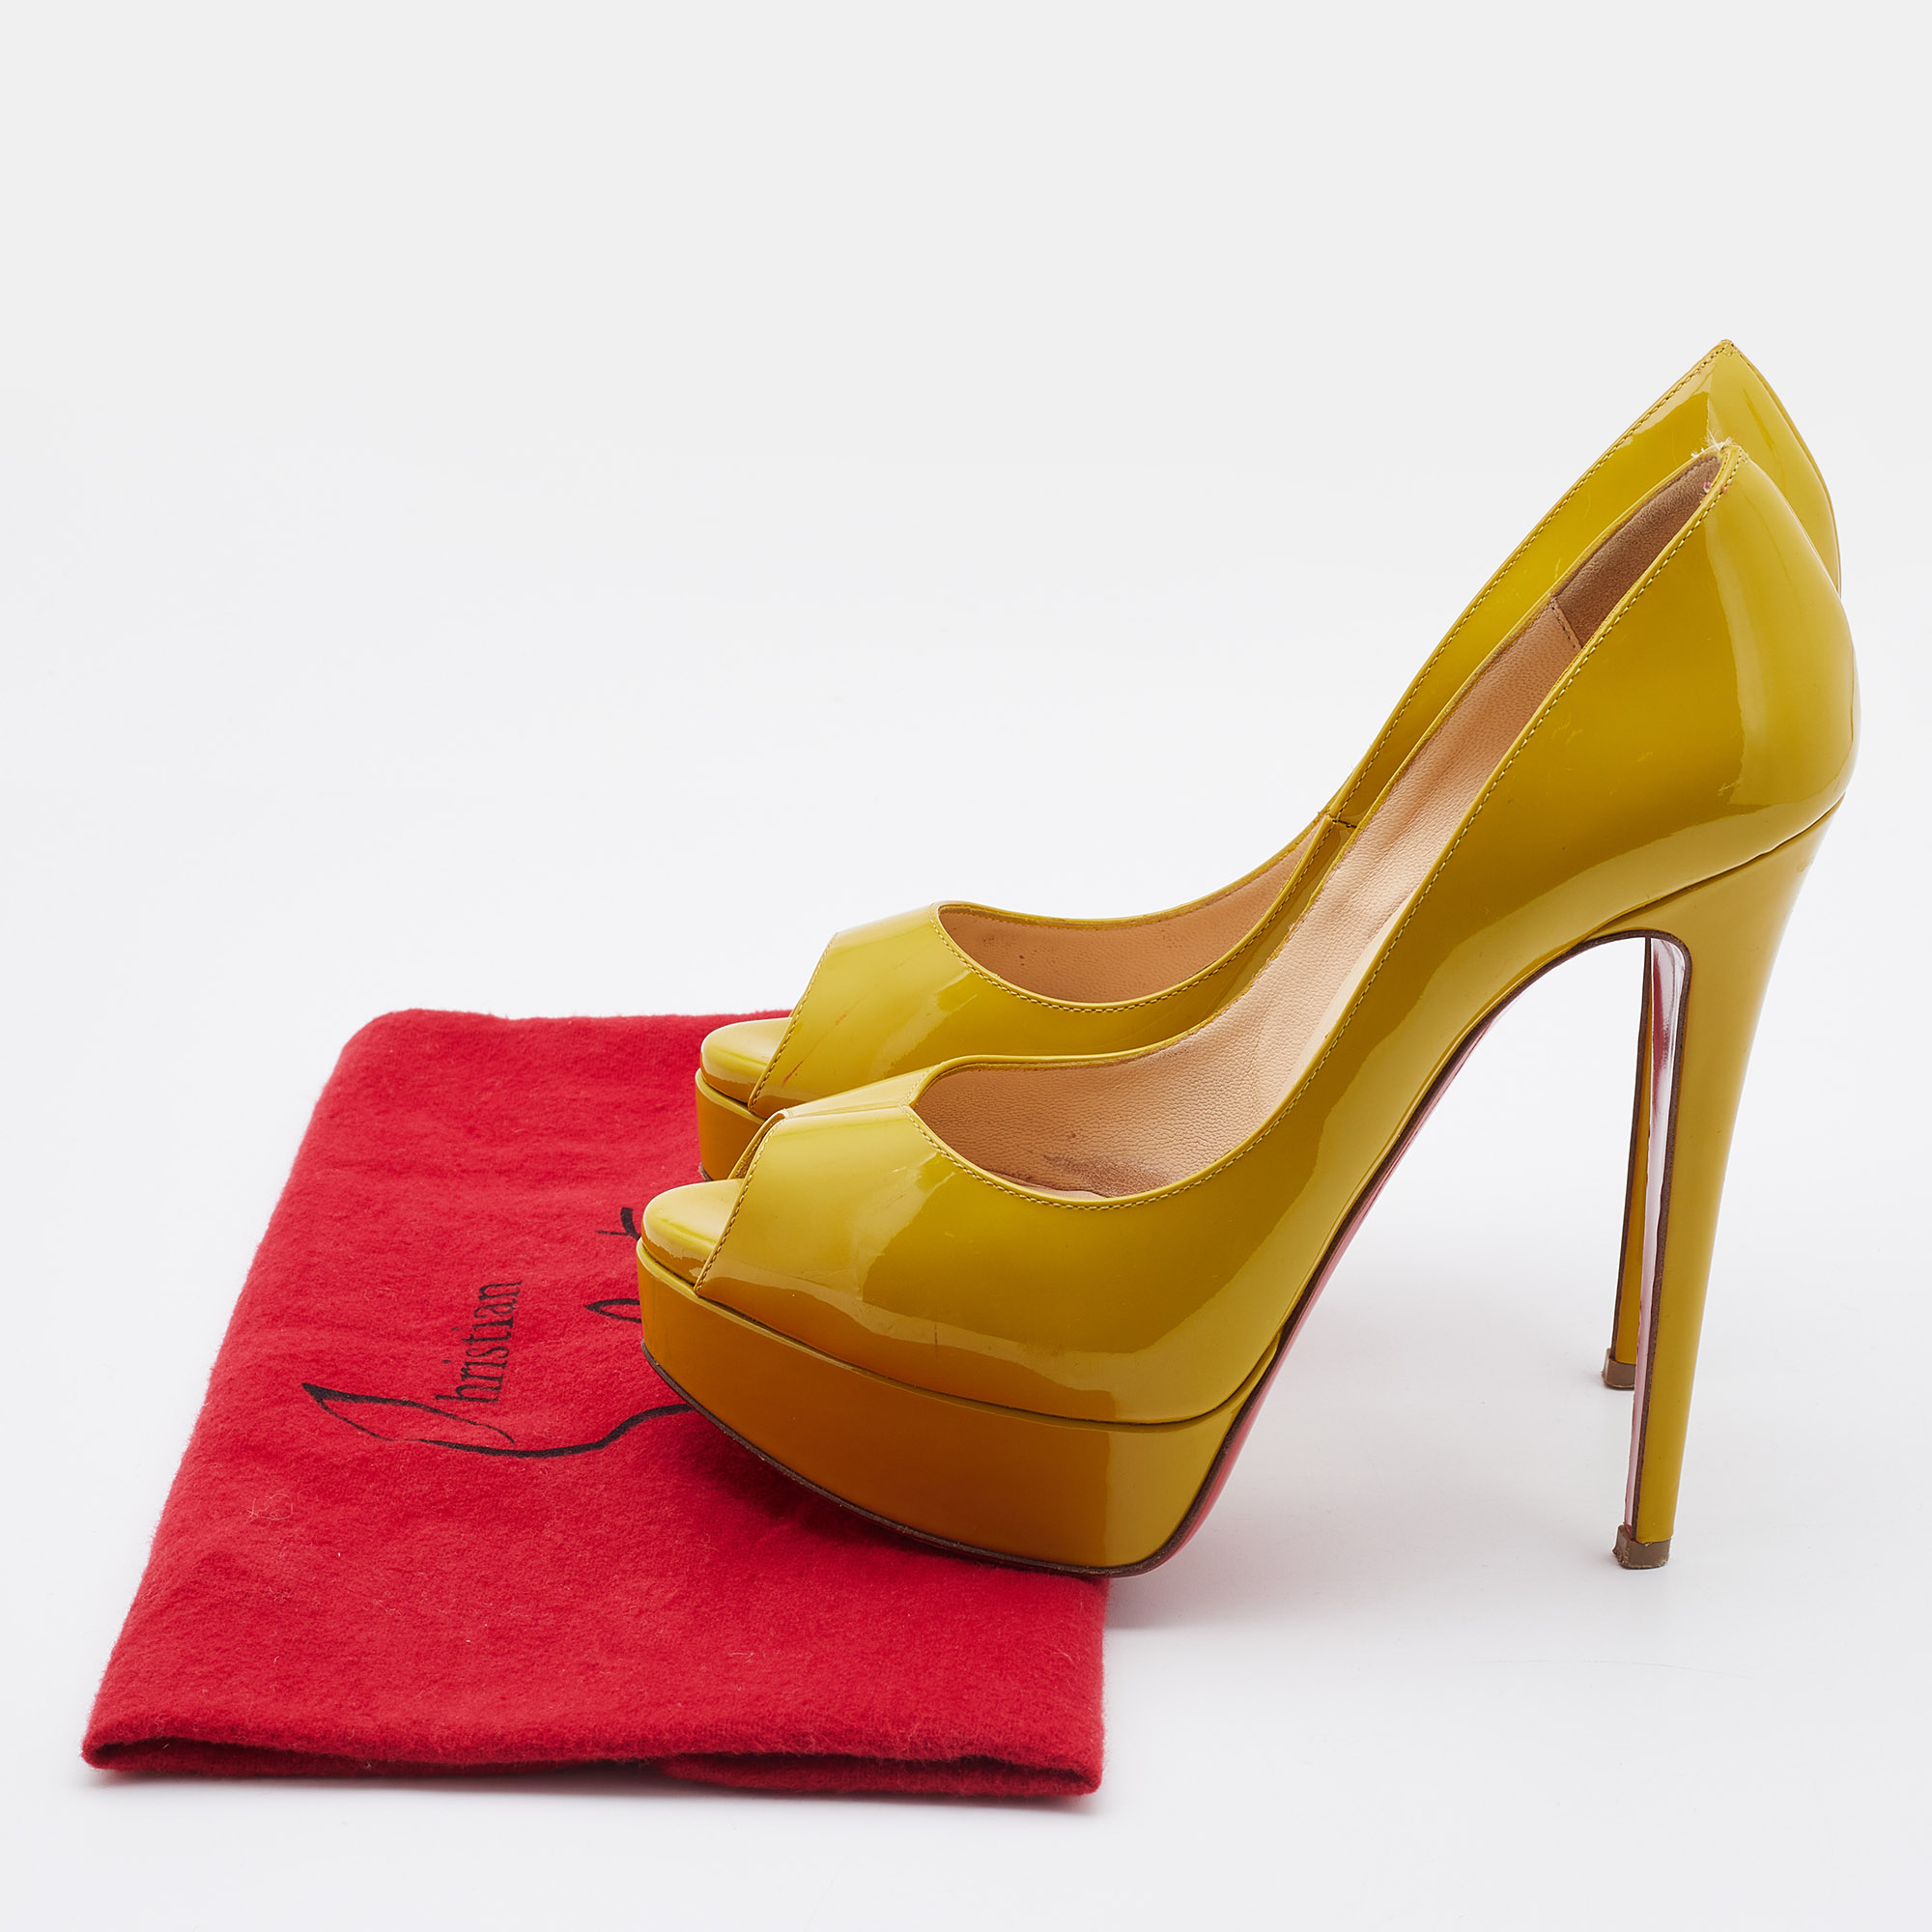 Christian Louboutin Mustard Patent Leather Lady Peep Toe Pumps Size 36